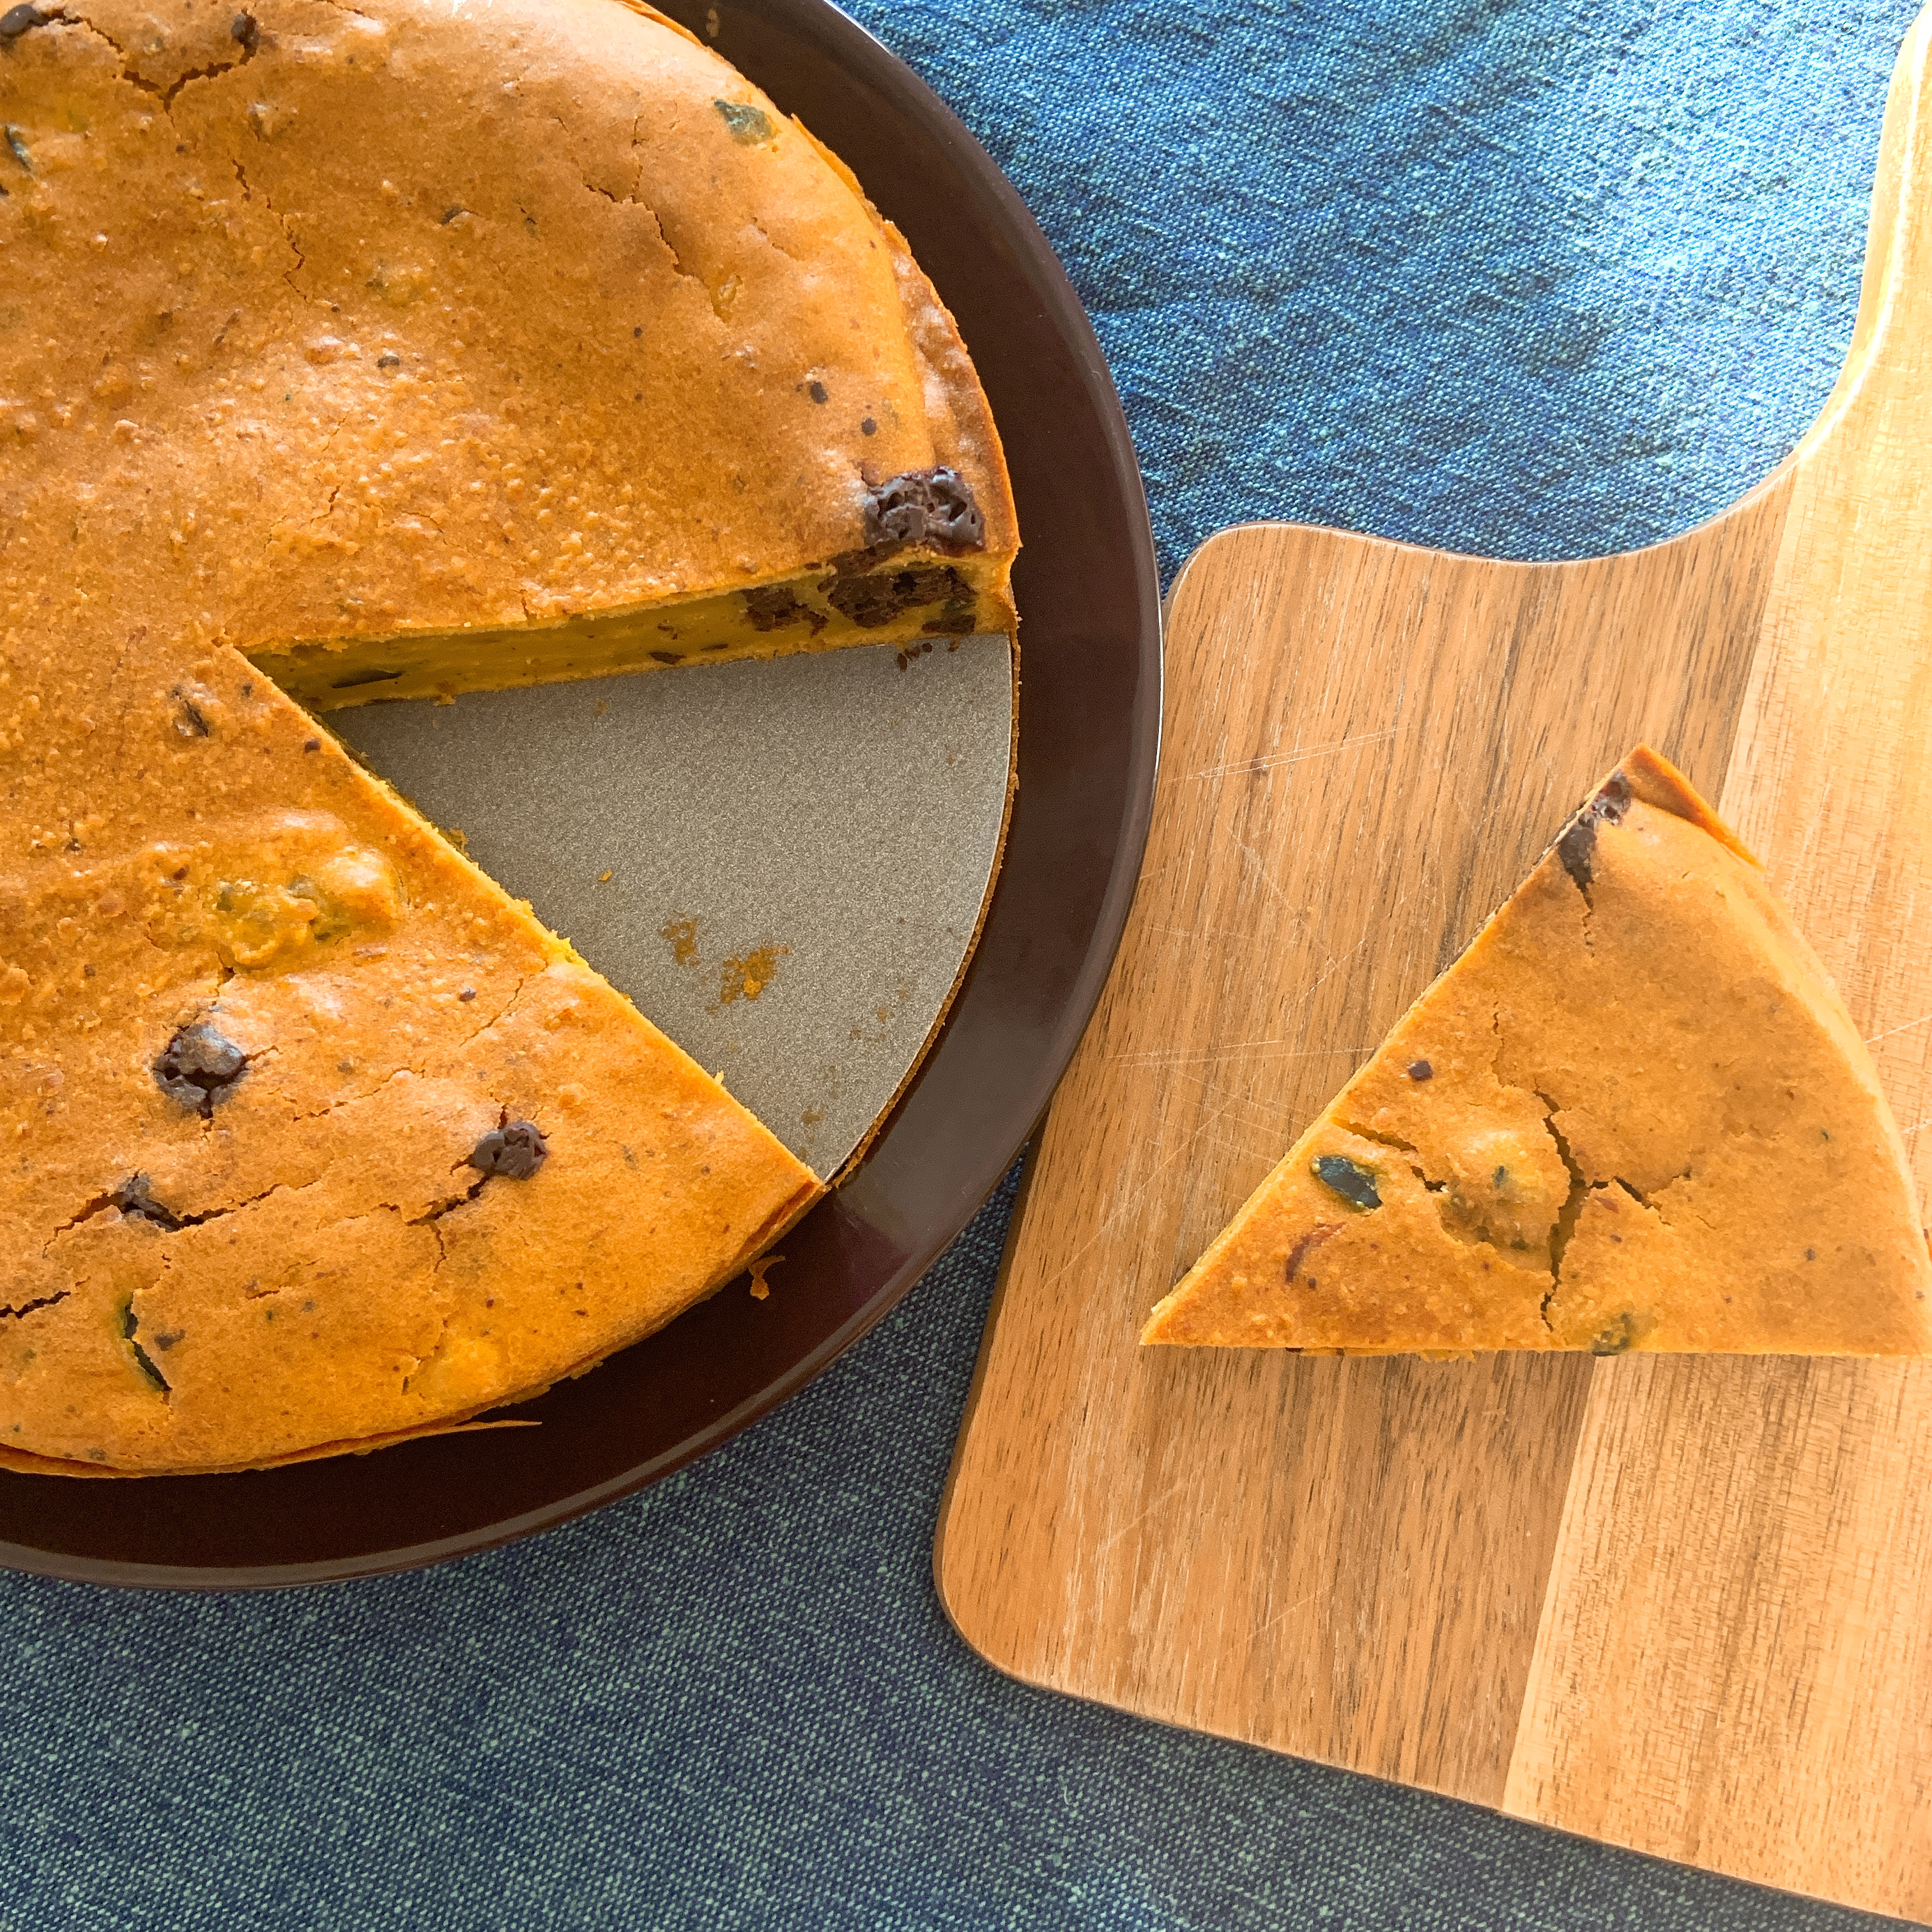 かぼちゃとチョコレートのしっとりパウンドケーキ 簡単 管理栄養士 豊永彩子のサイト